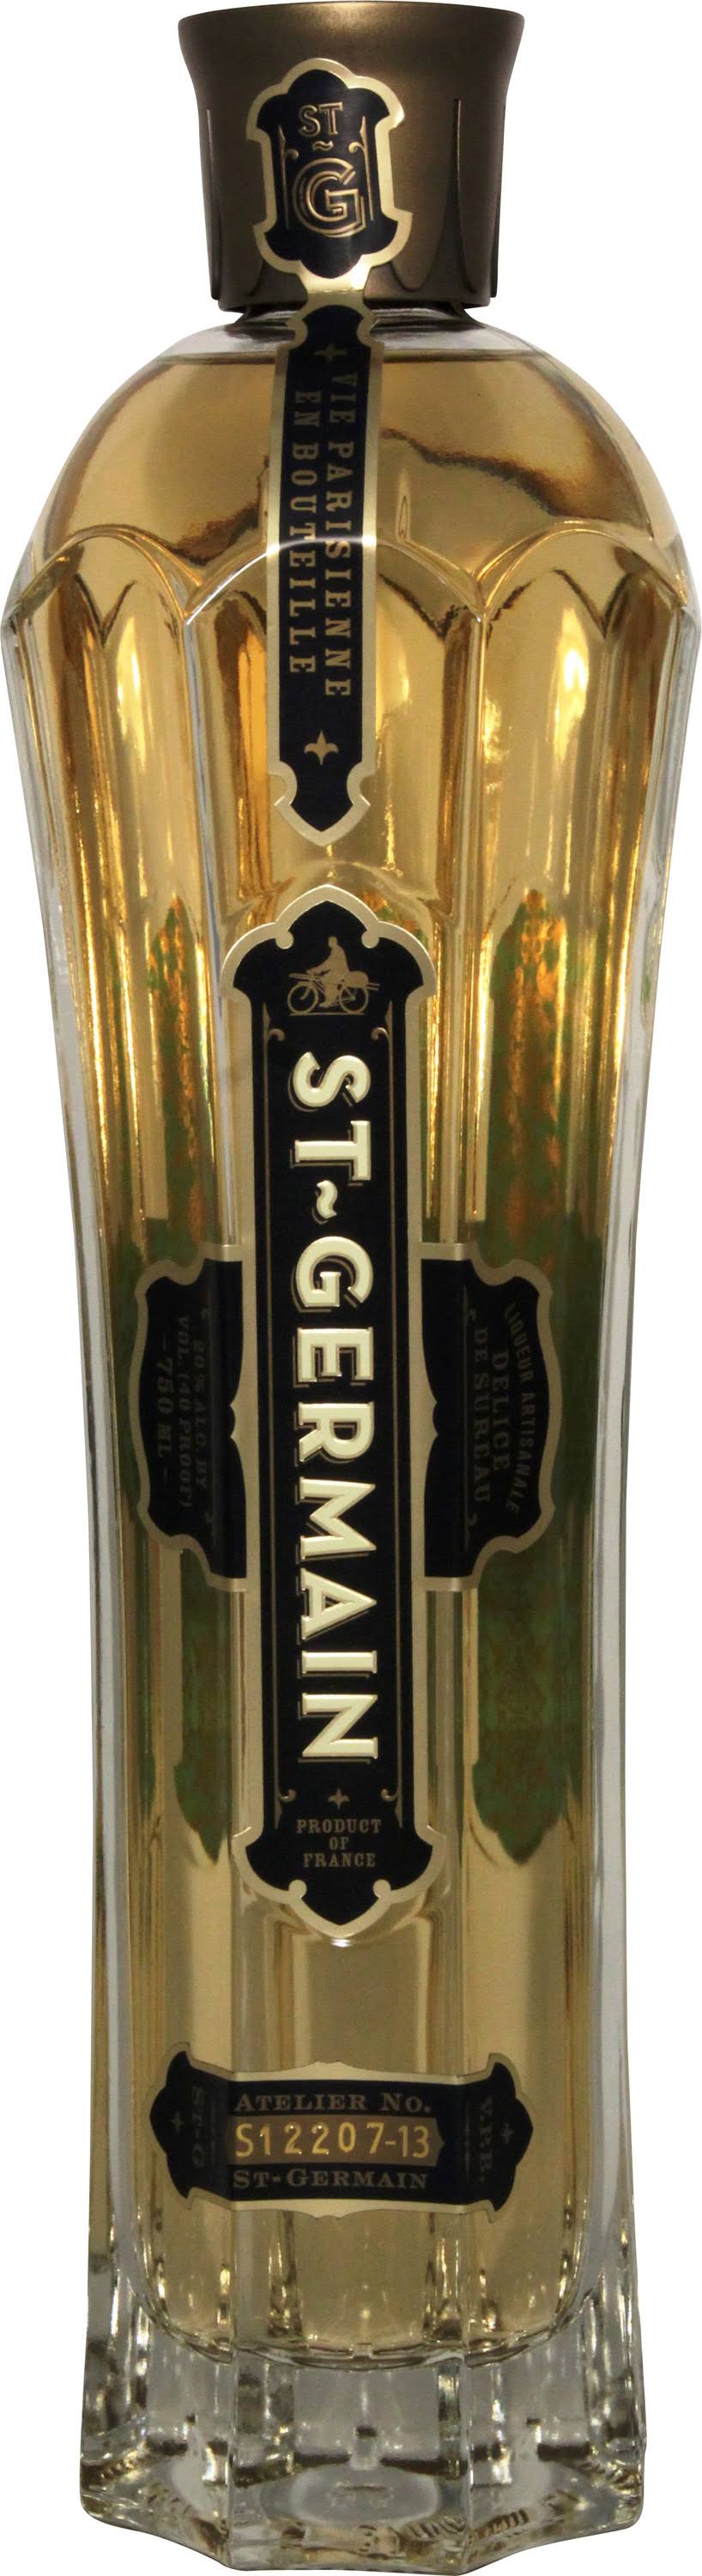 St Germain Elderflower Liqueur - 750ml